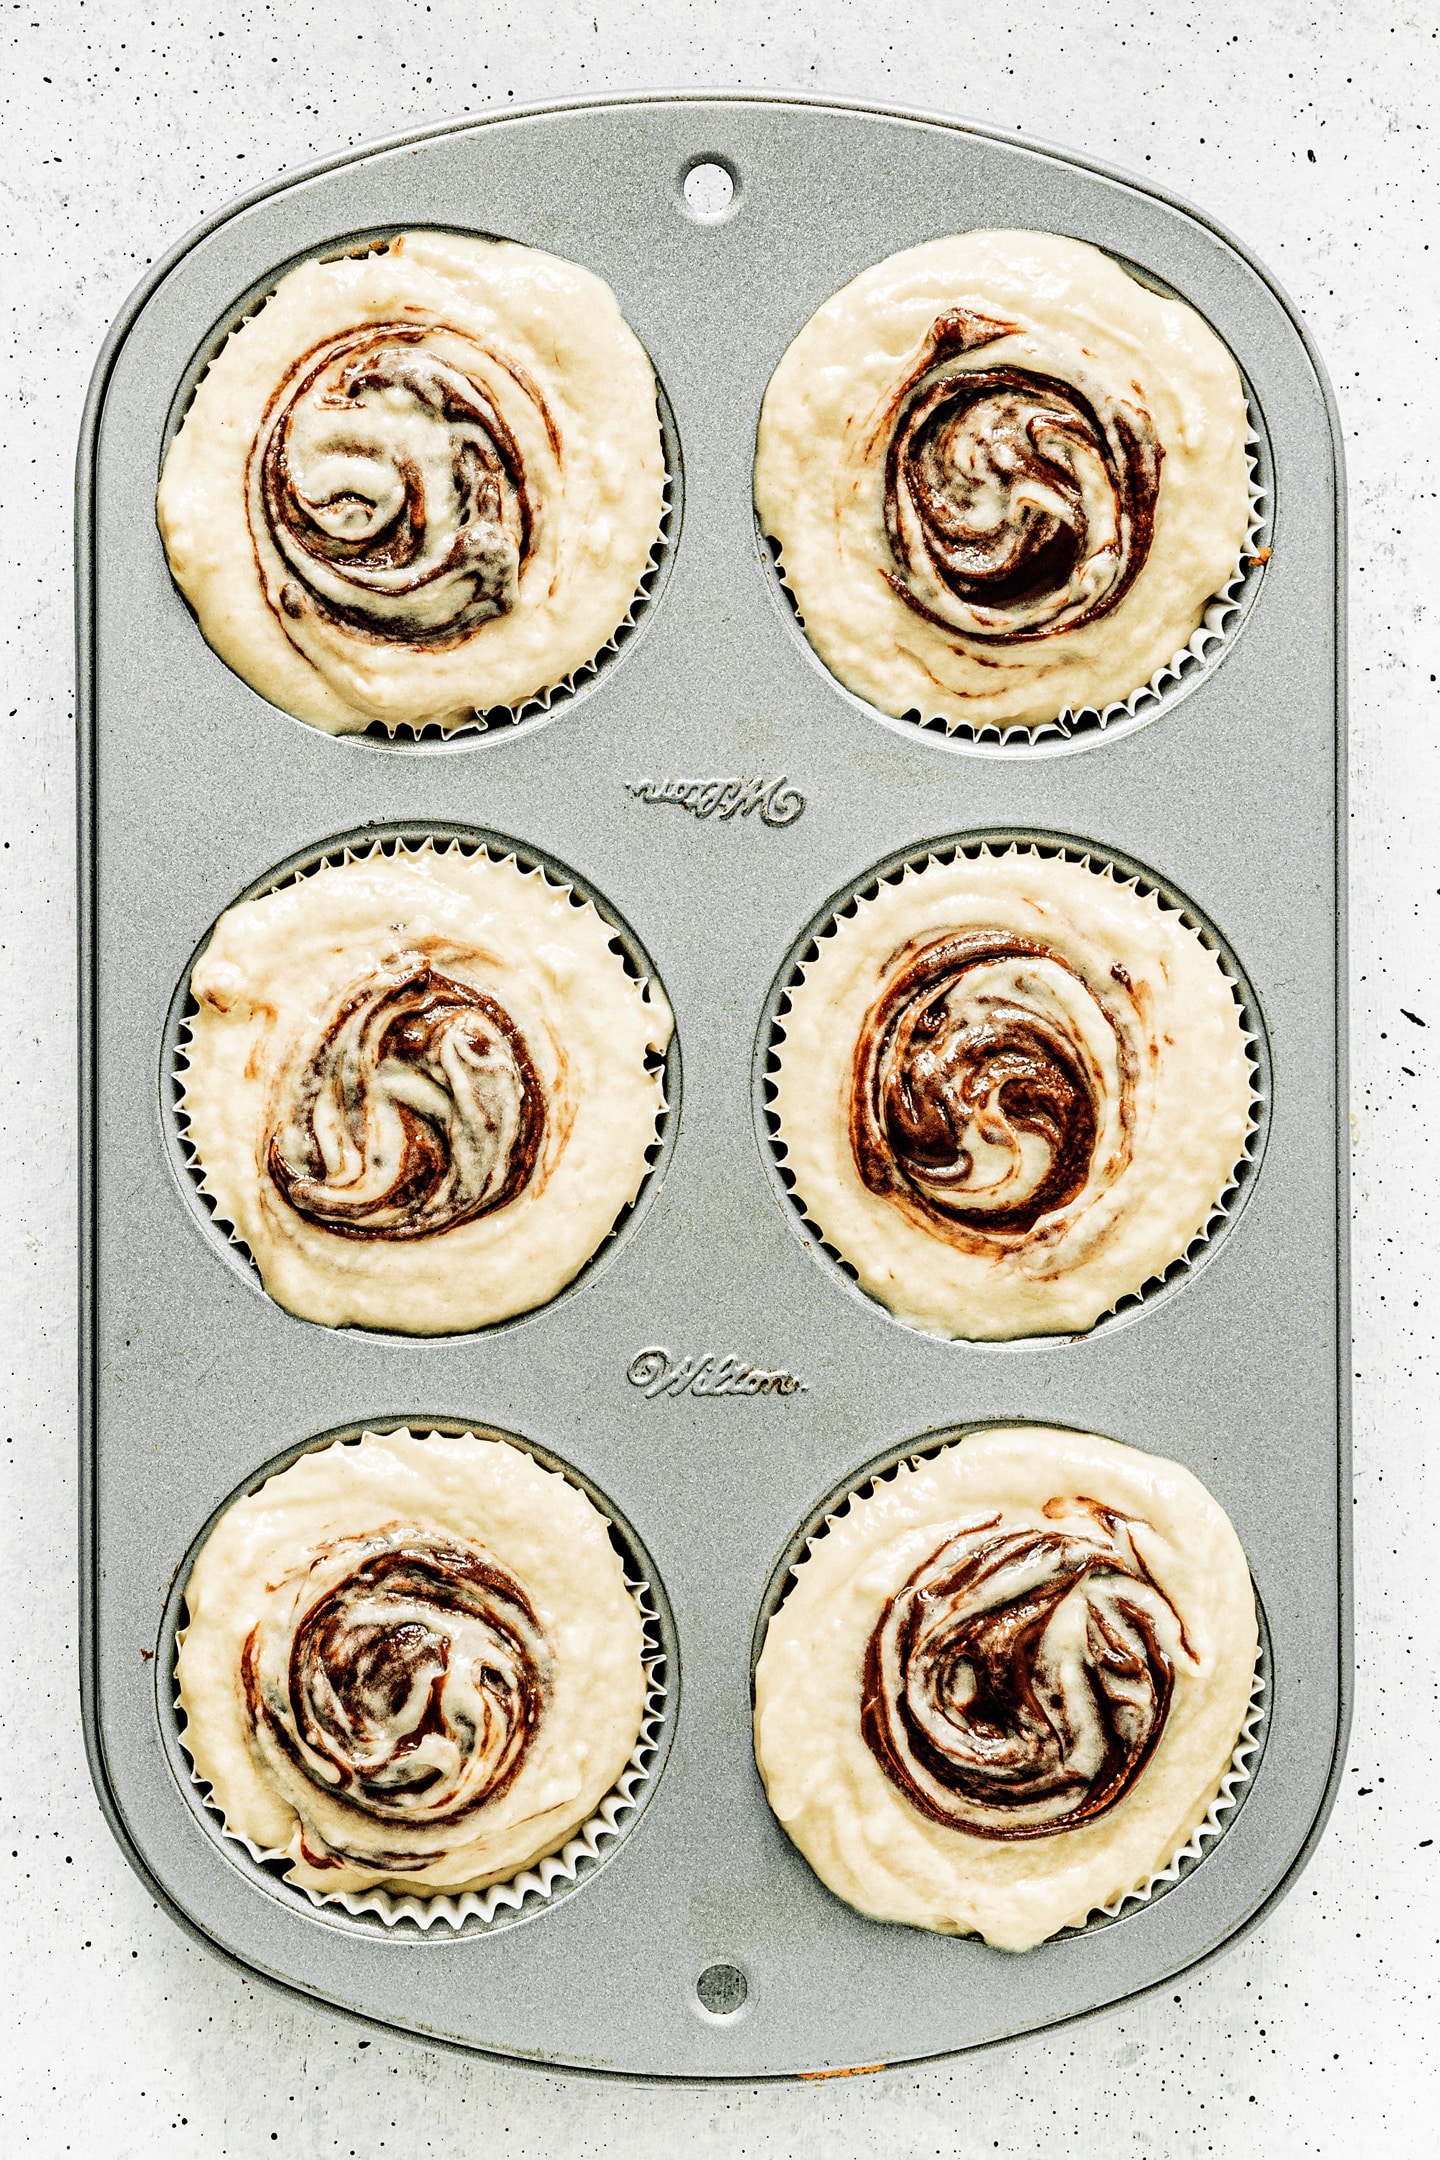 Moule à muffins avec les muffins tourbillons de nutella avant cuisson